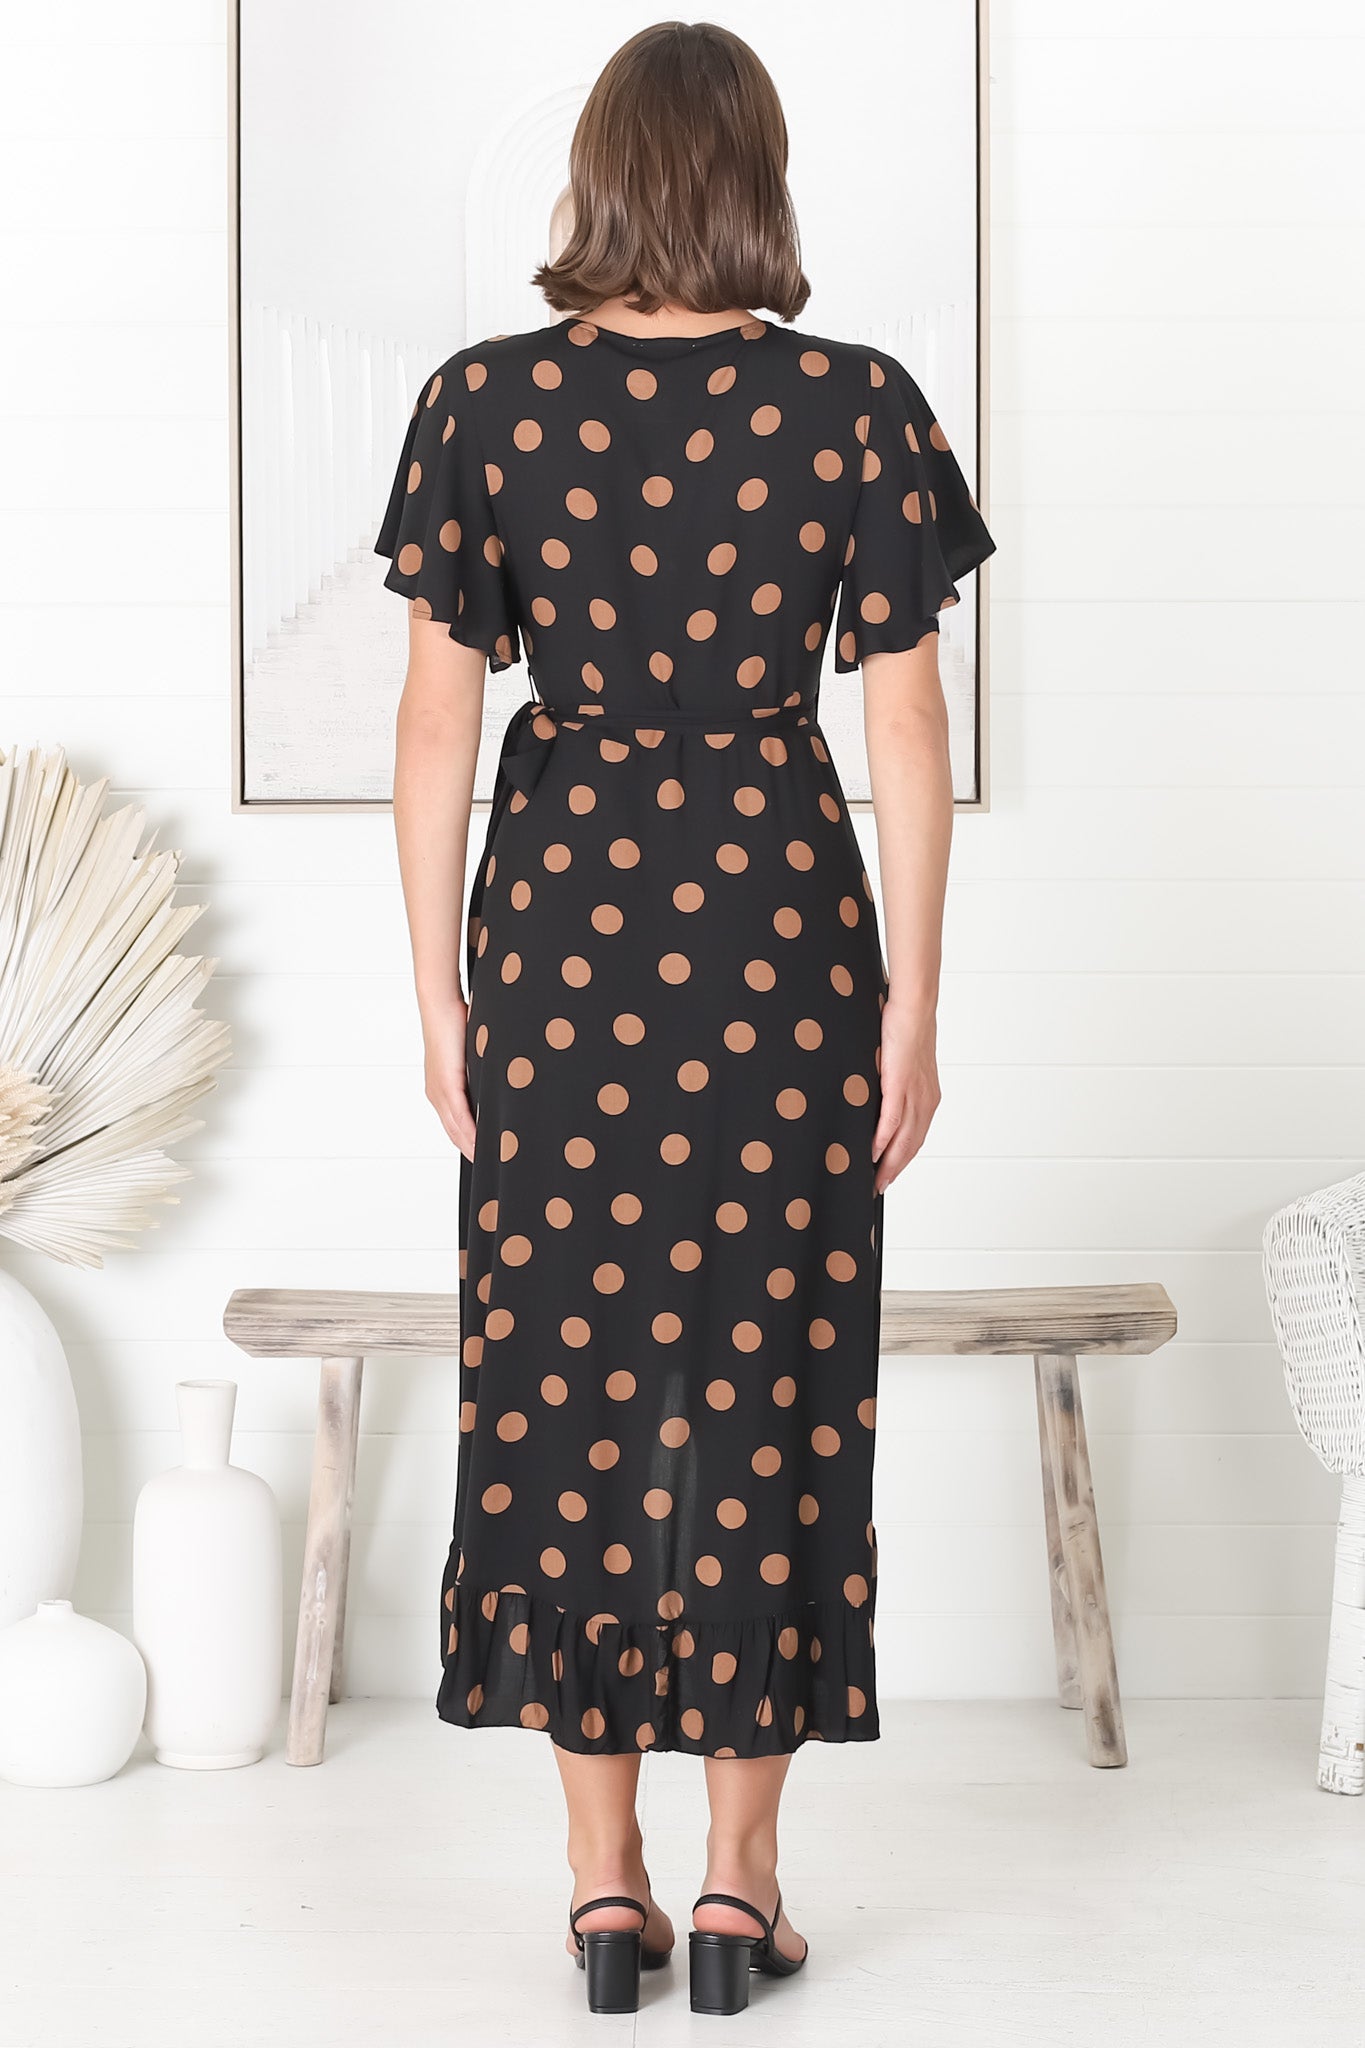 Carolina Midi Dress - V Neck Wrap Dress with Ruffle High Low Hemline in Mahony Print